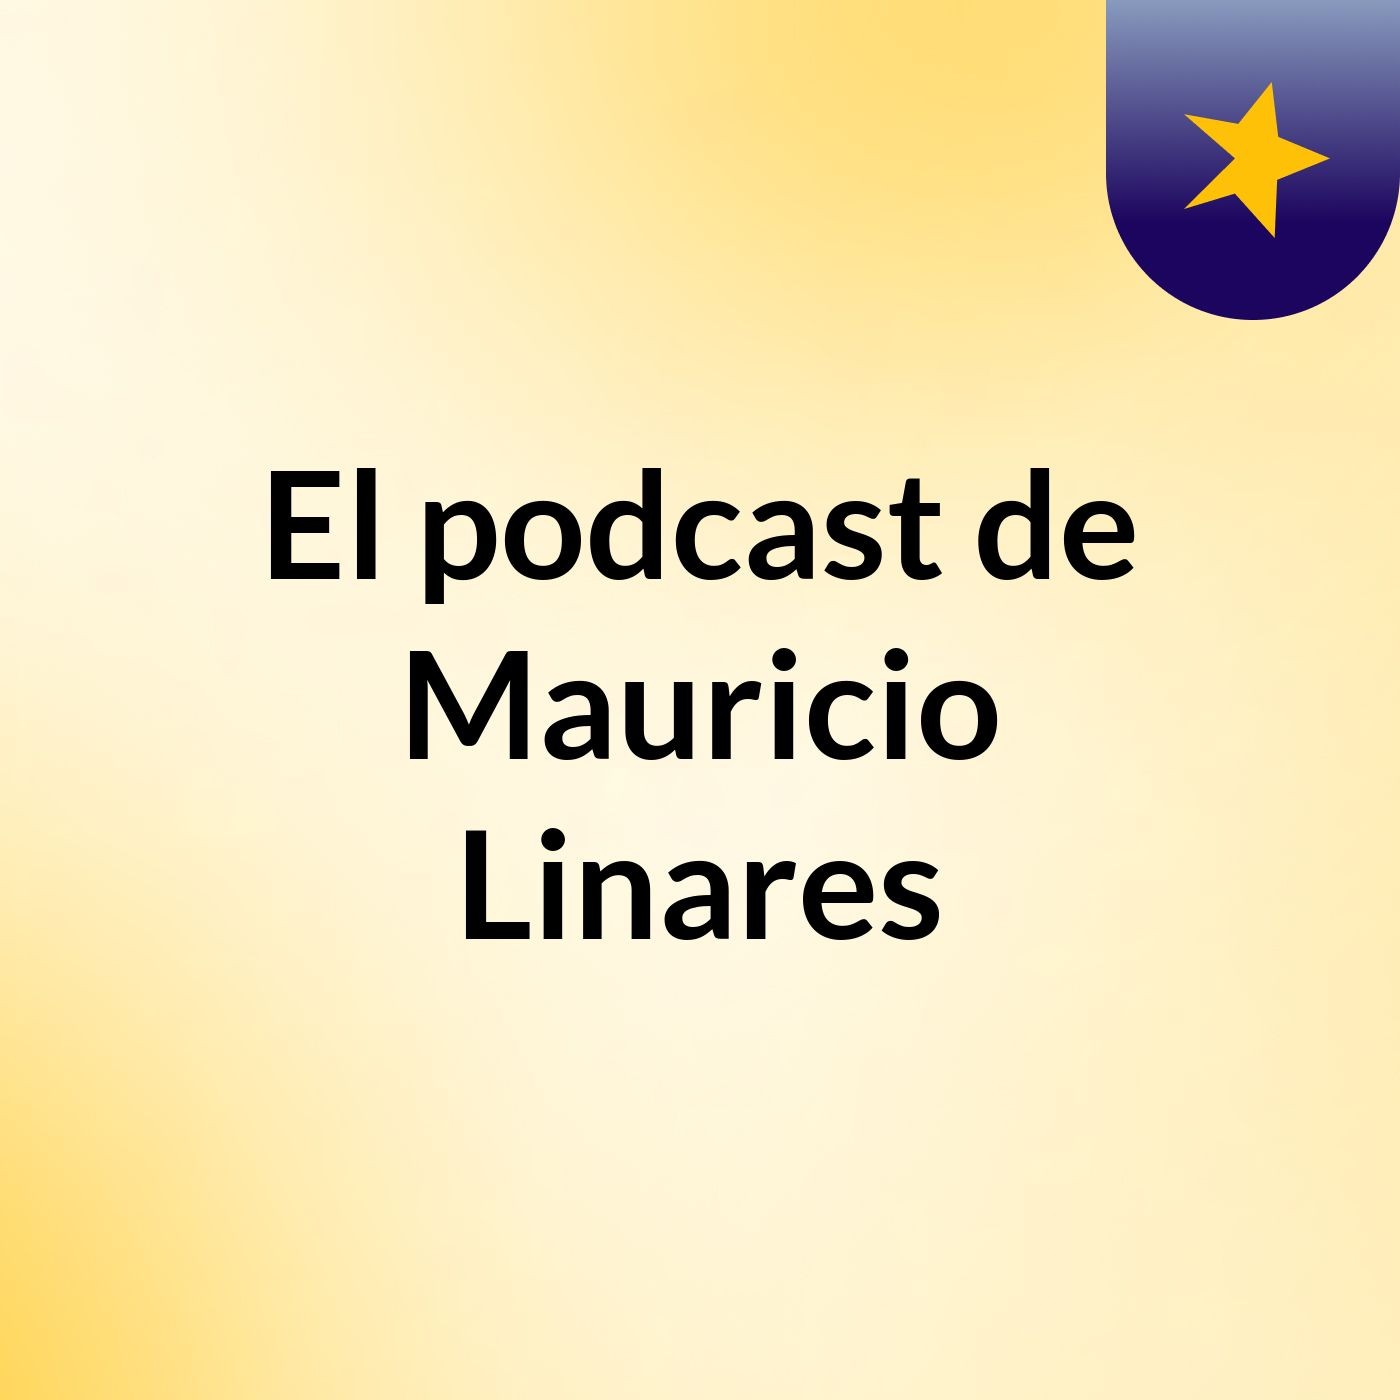 El podcast de Mauricio Linares